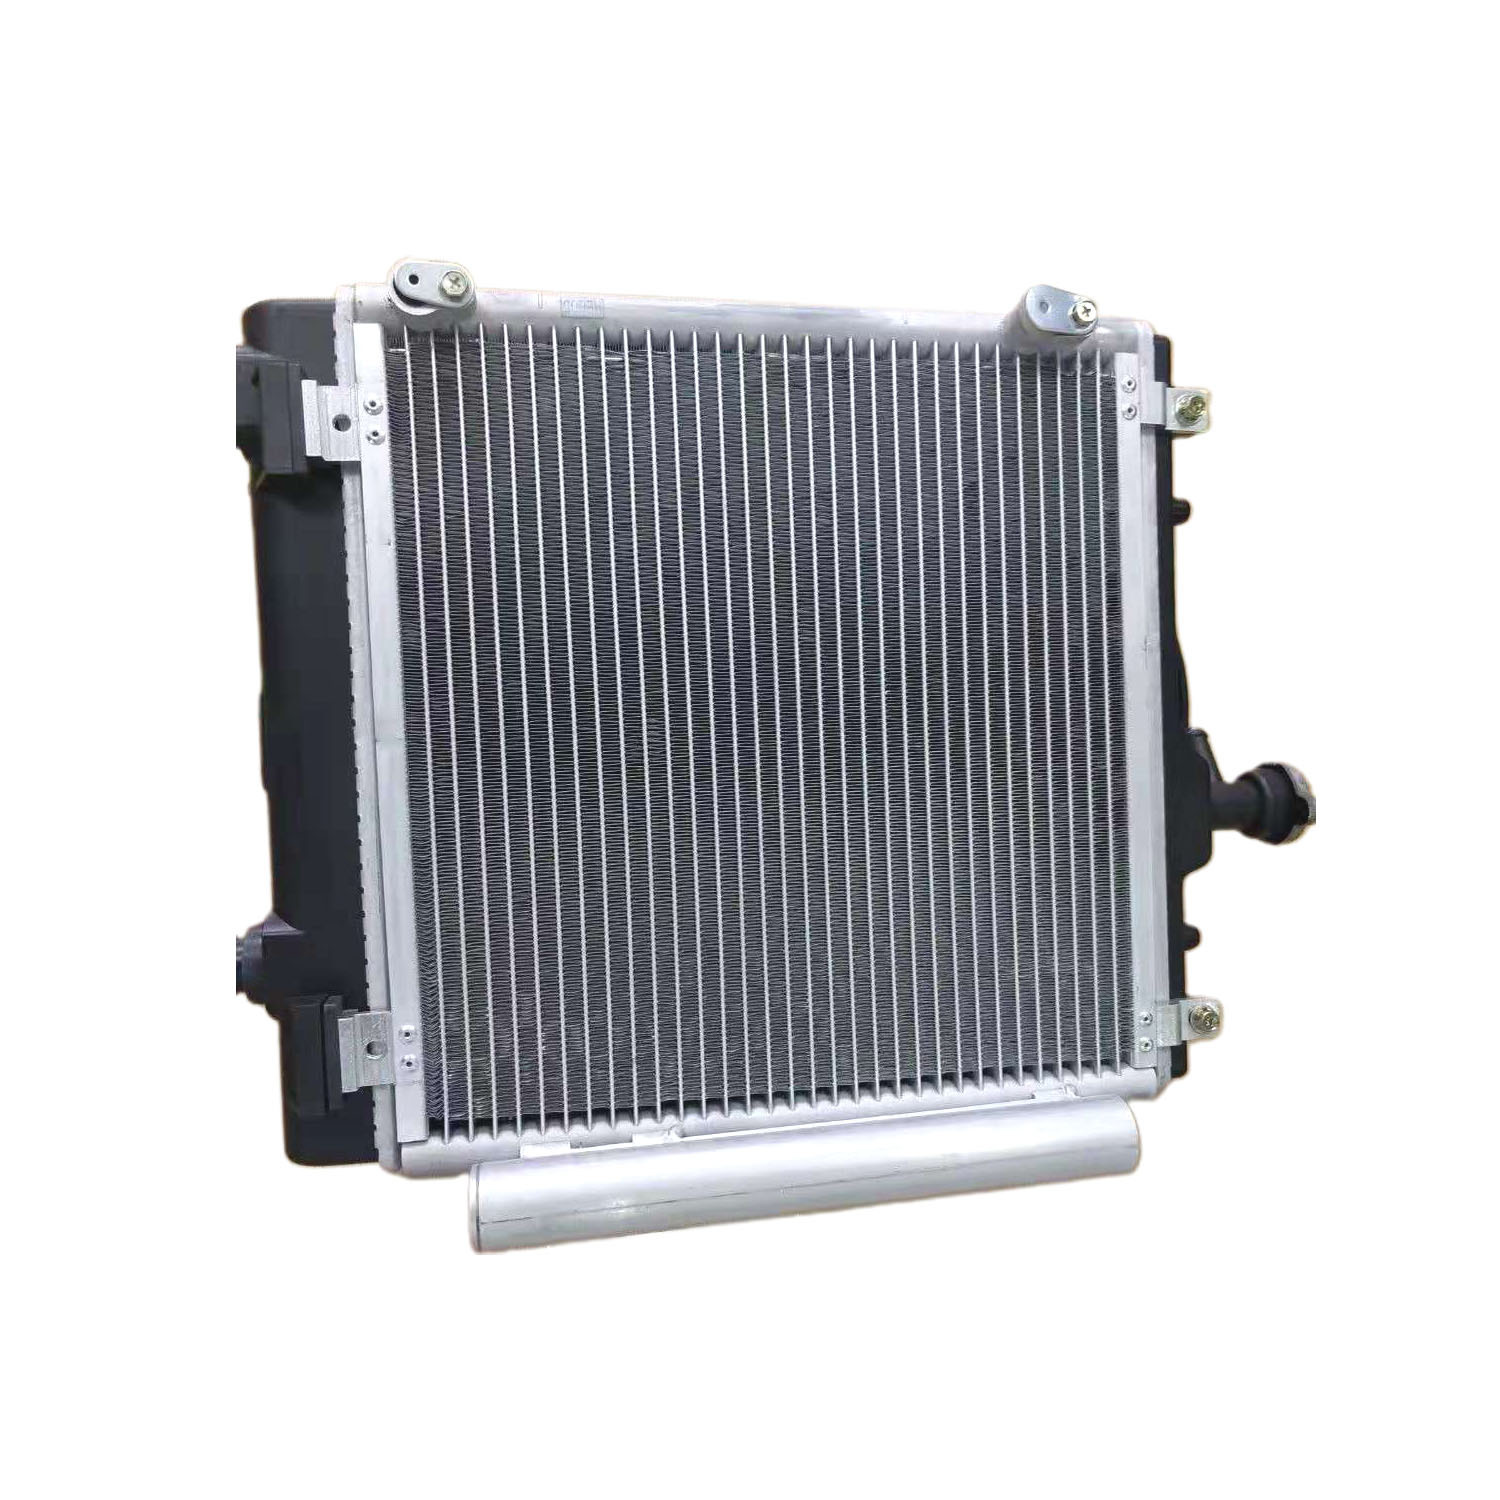 Intercambiador de calor de microcanal de aluminio